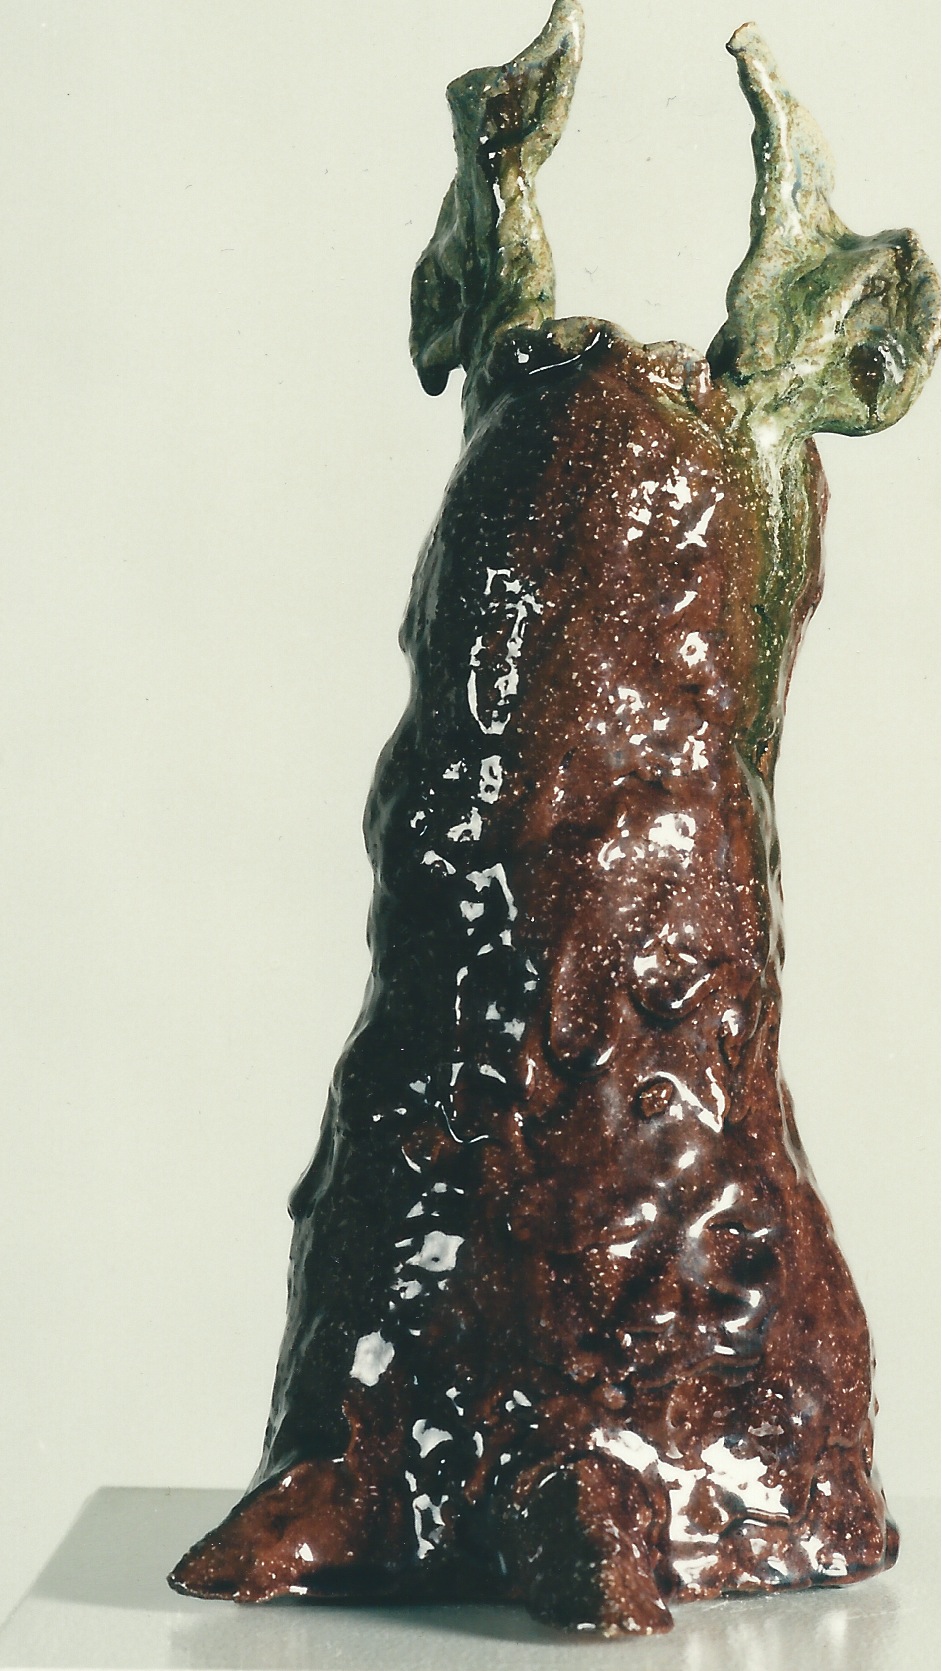 Gesichtsloser, kurzflügeliger Engel, 1997, Keramik glasiert (36,5 x 16,0 x 18,0 cm)